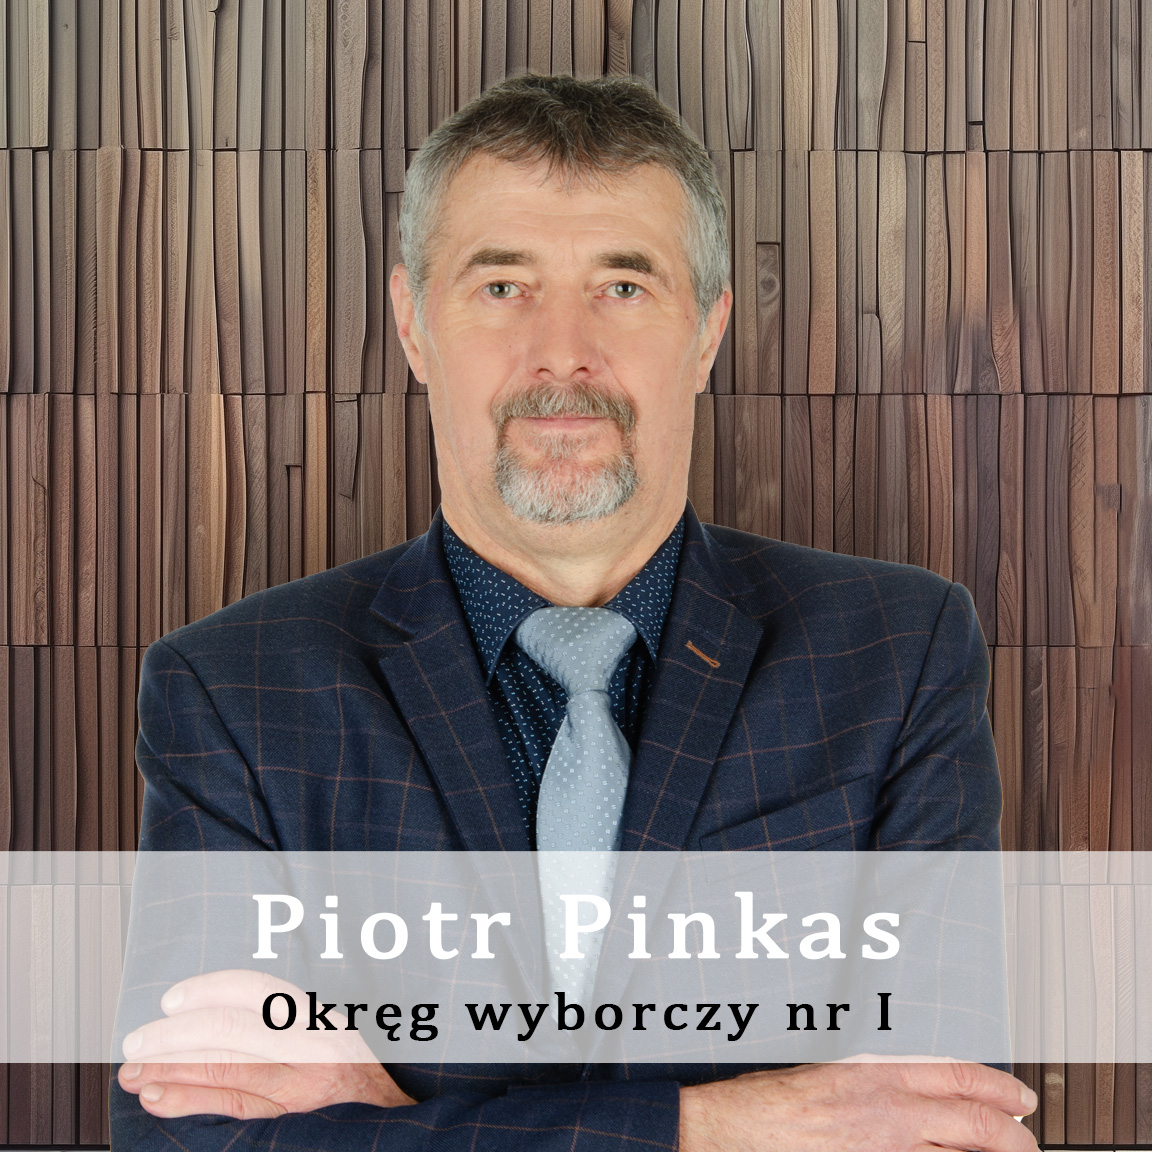 Piotr-Pinkas-Okręg-wyporczy-nr-1-Radny-Miasto-Wisła